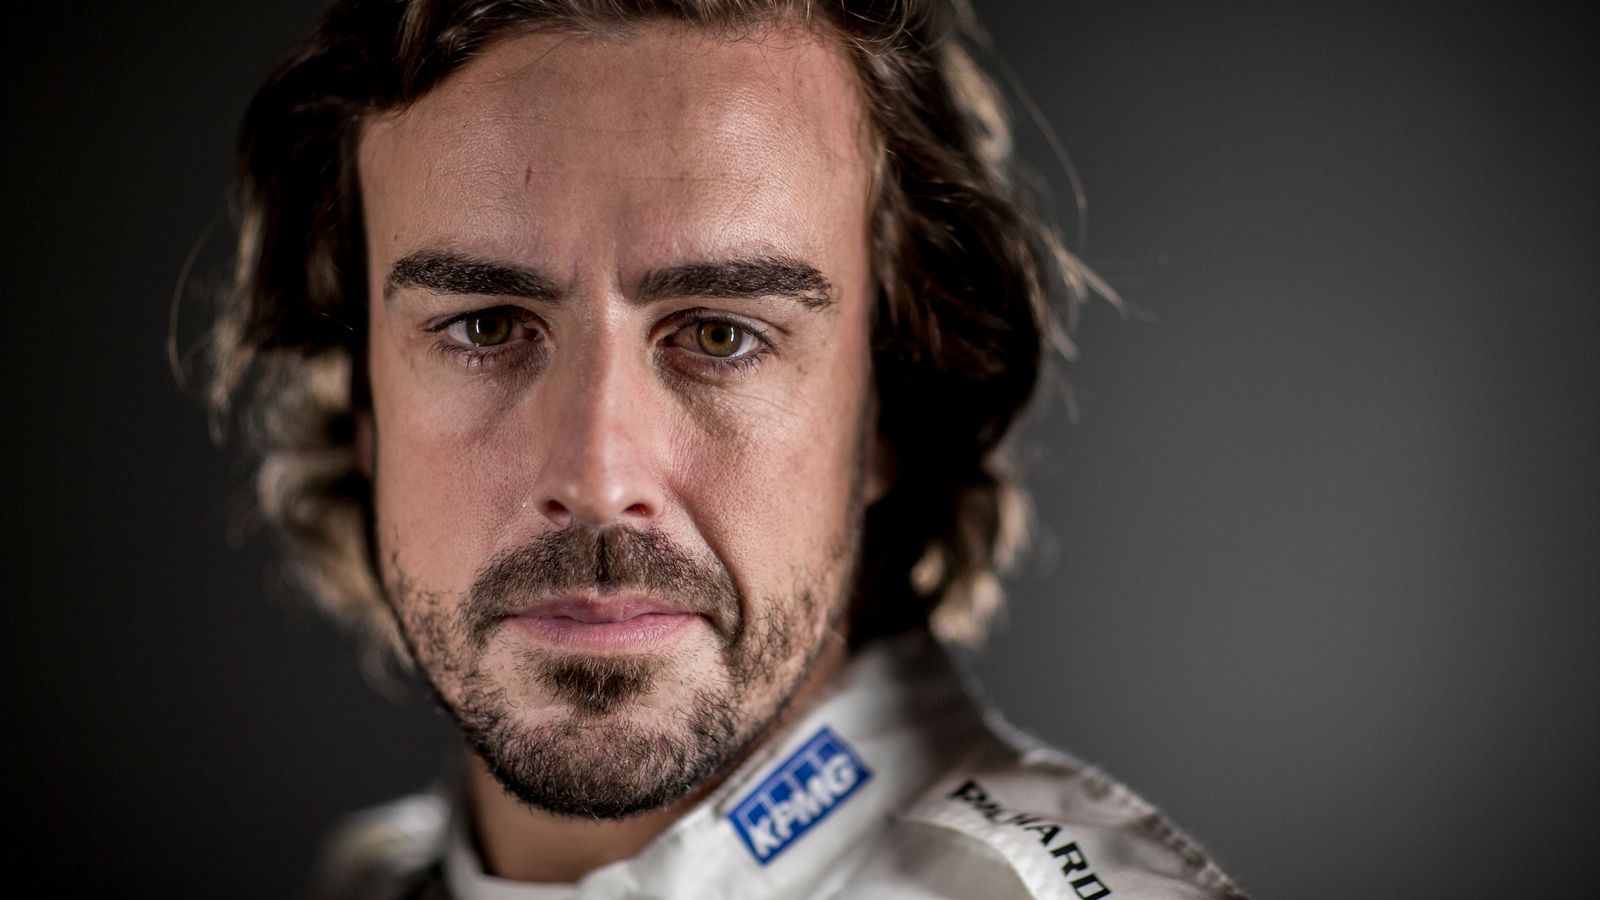 Fernando Alonso Profile - Bio, News, High-Res Photos & High Quality Videos